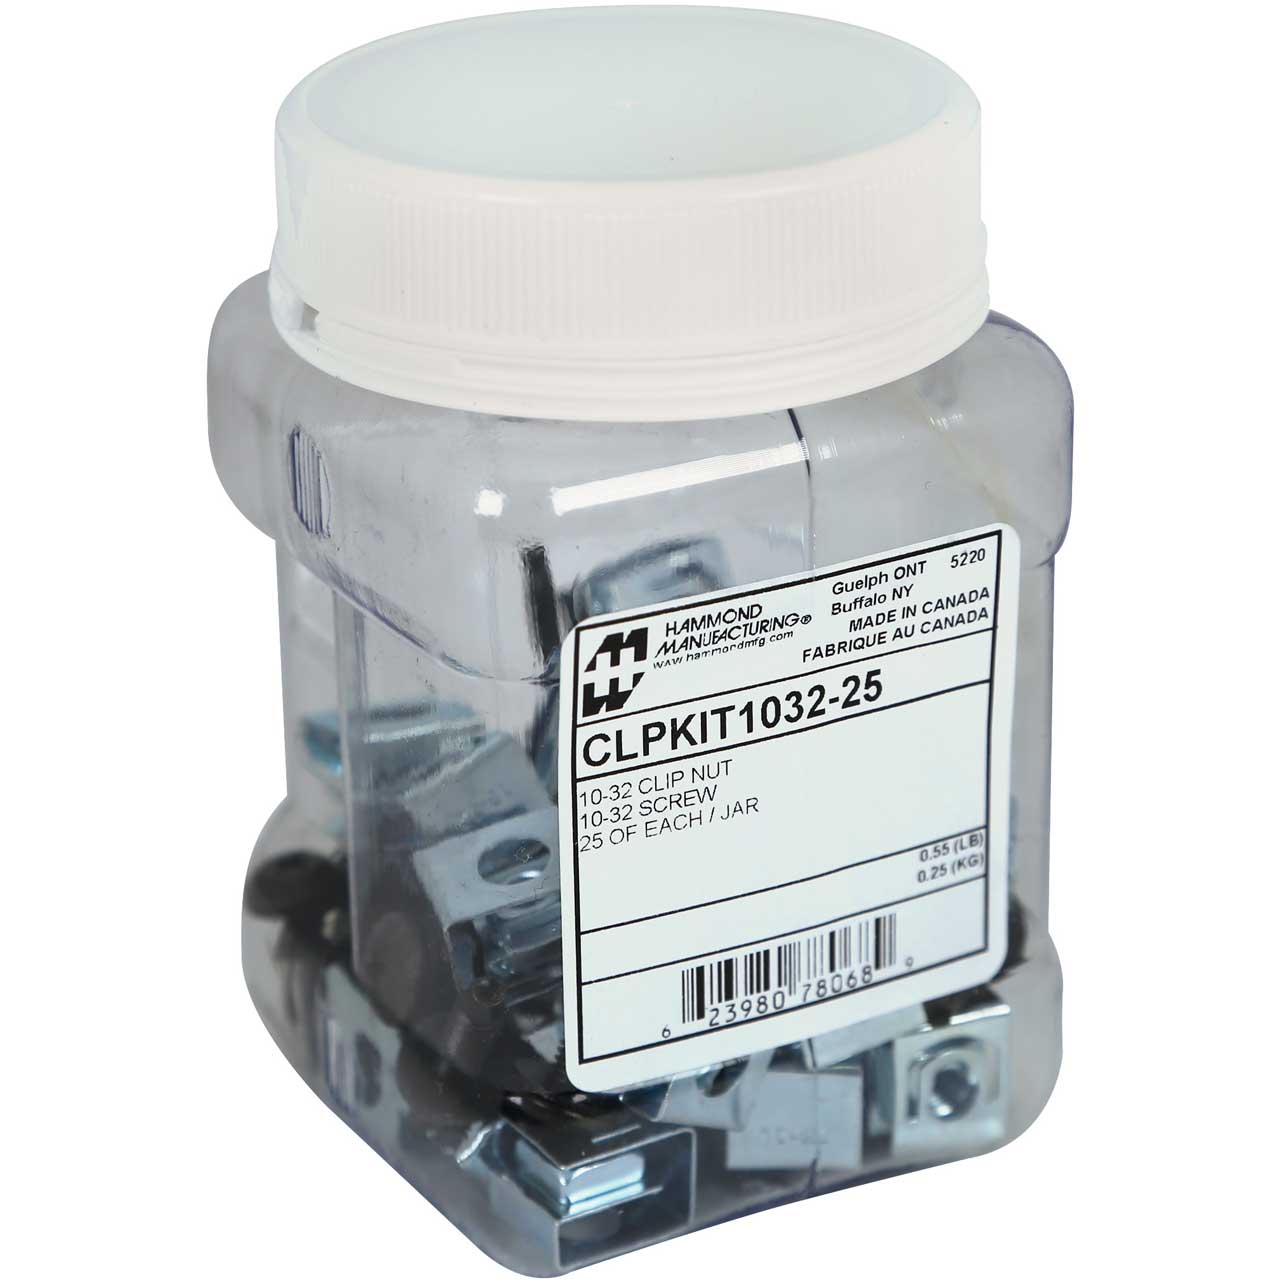 Hammond CLPKIT1032-25 10-32 Clip Nuts and Screws - 25 Pack in Plastic Jar CLPKIT1032-25